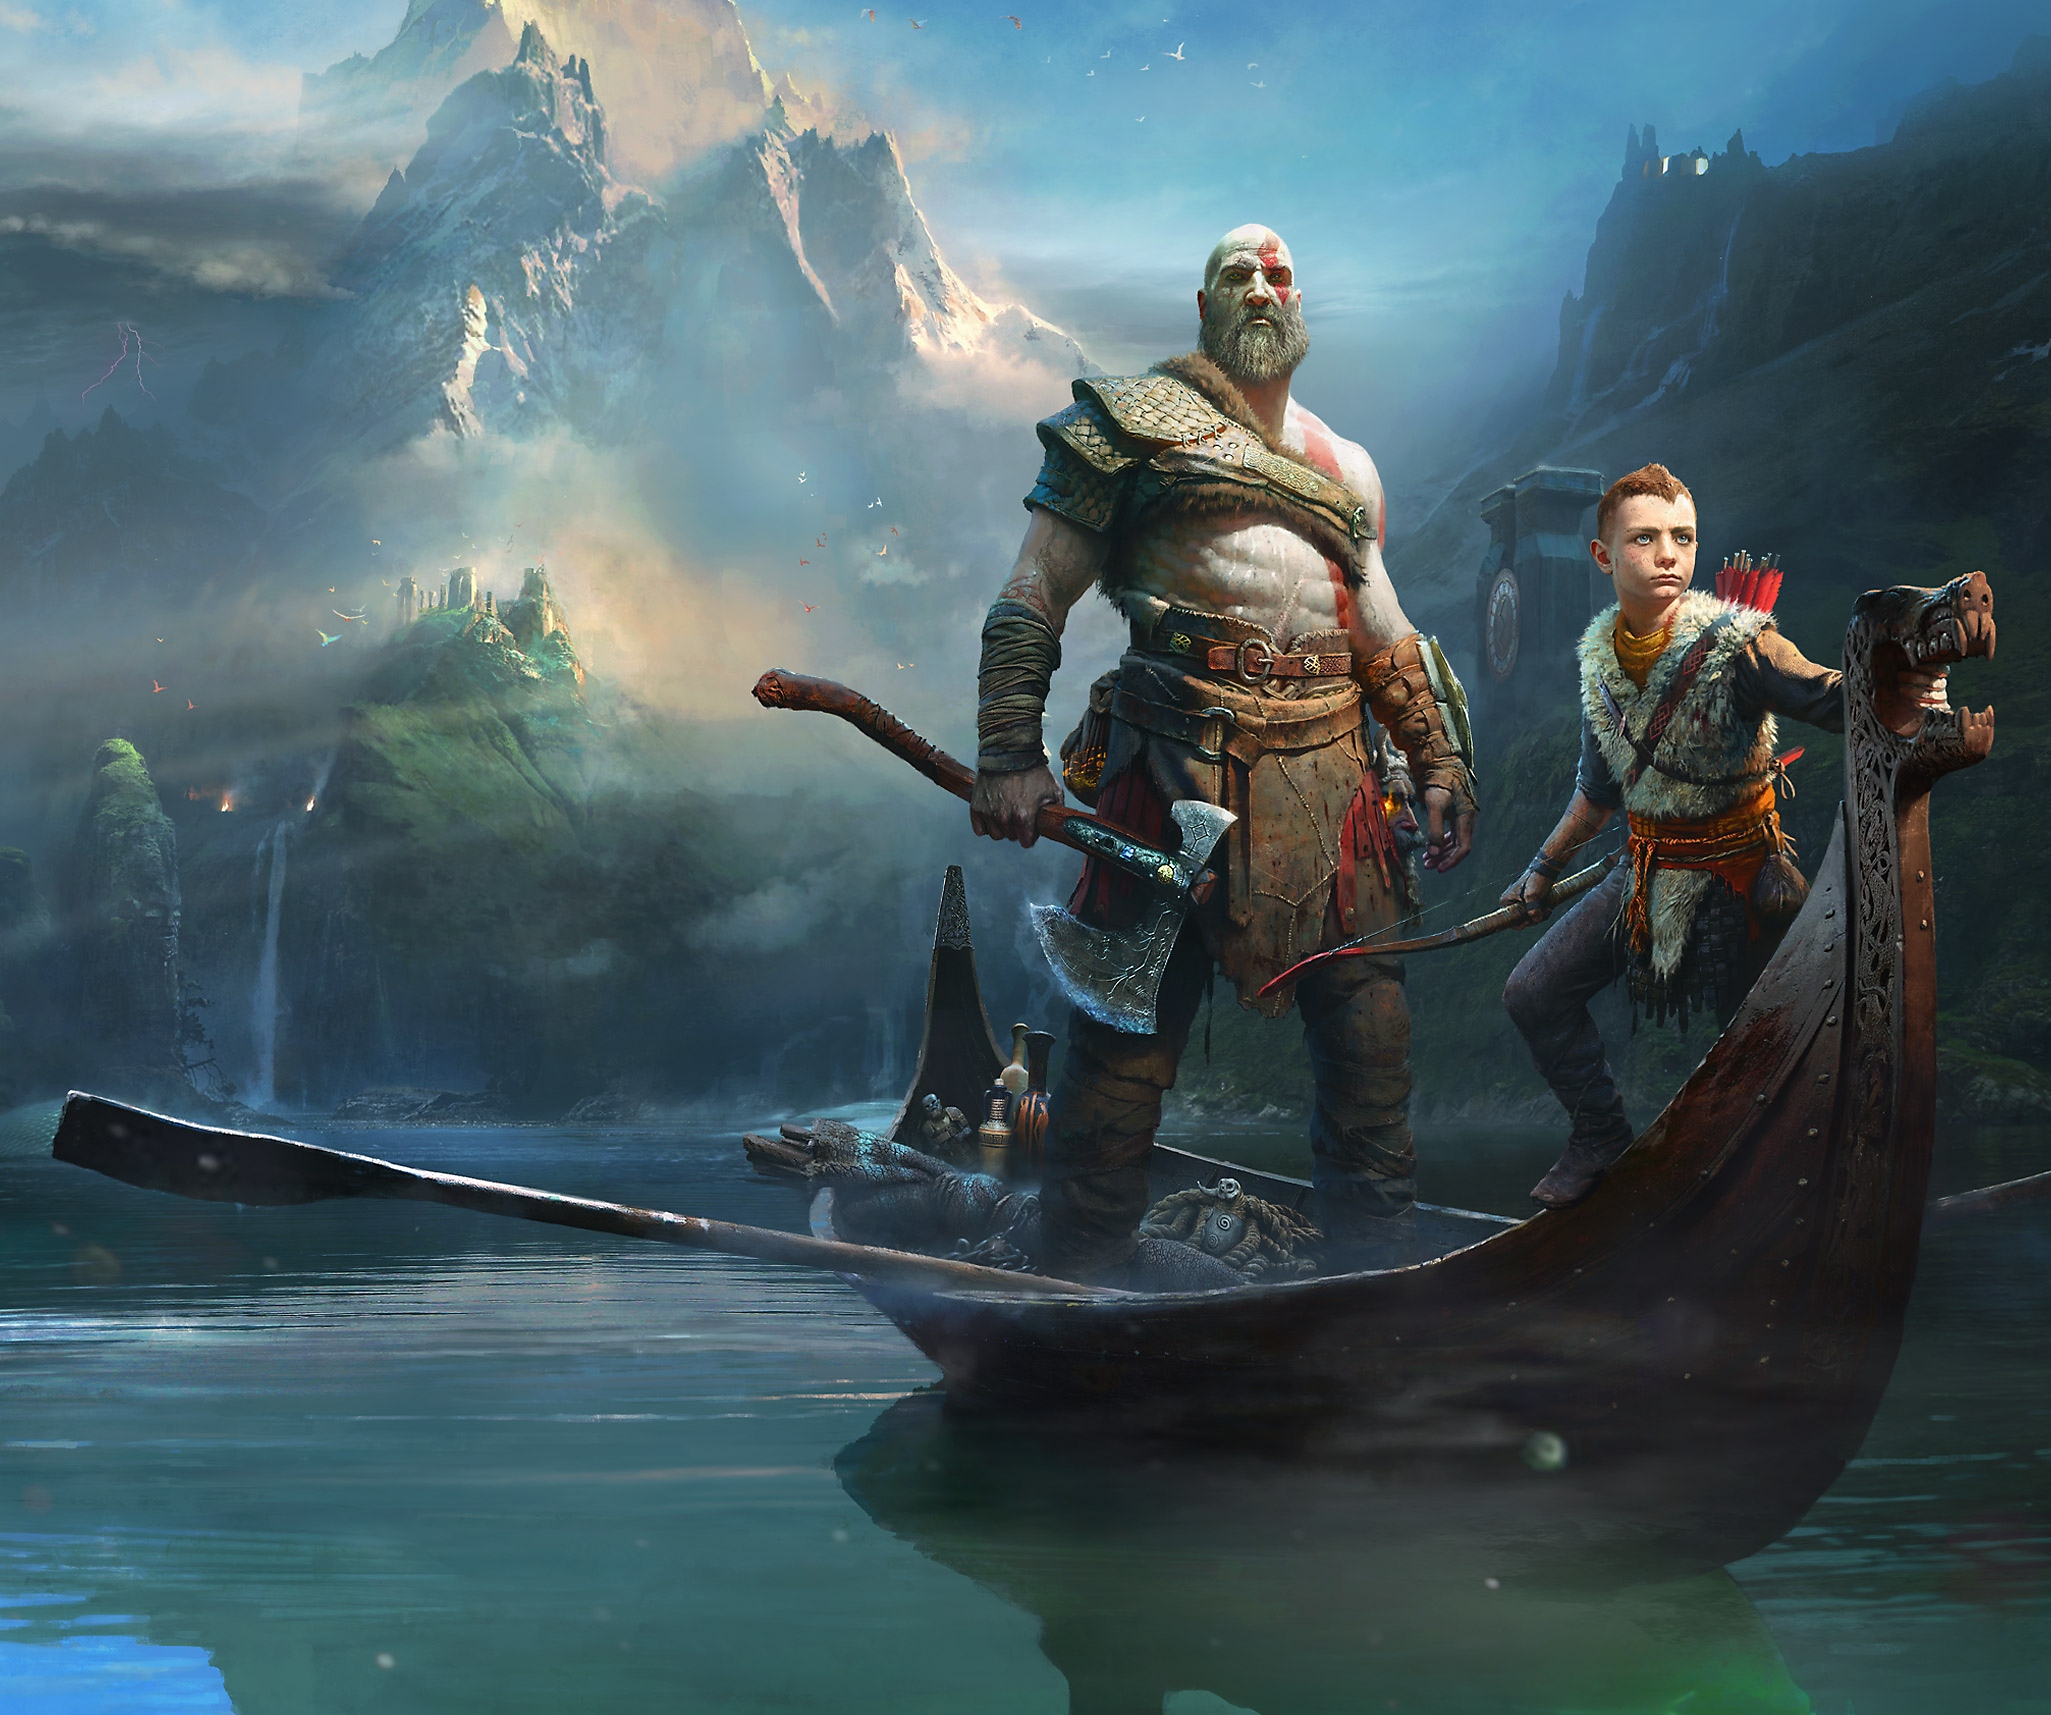 《God of War》主题宣传海报展示了奎托斯和阿特柔斯立于九界之湖上的一艘小木船中。